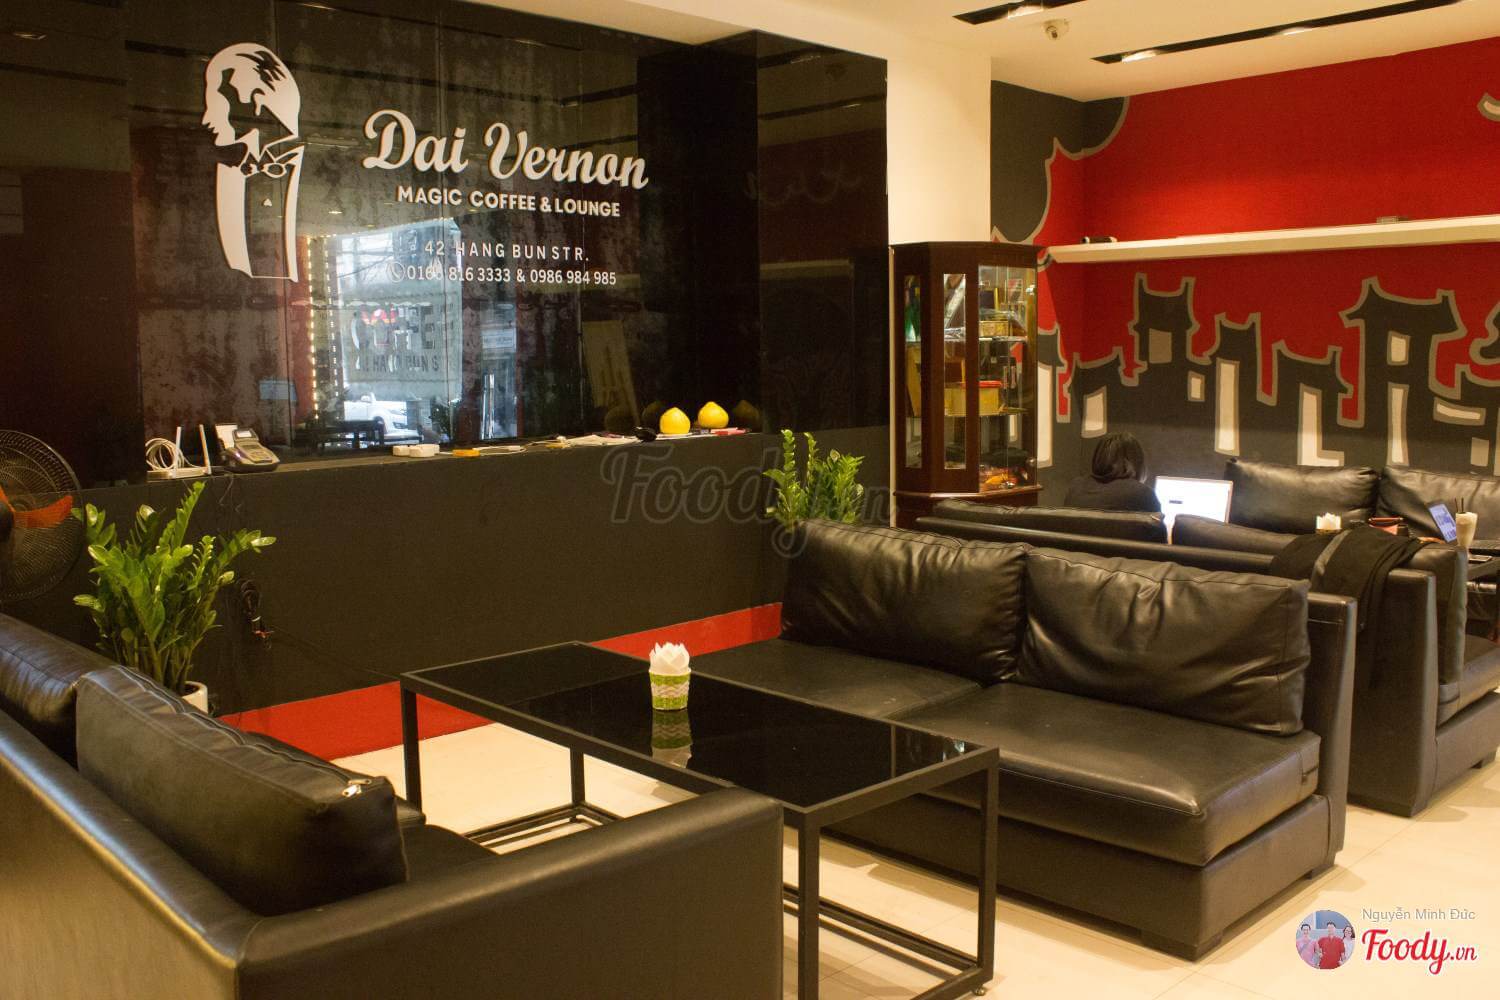 Dai Vernon Coffee & Lounge